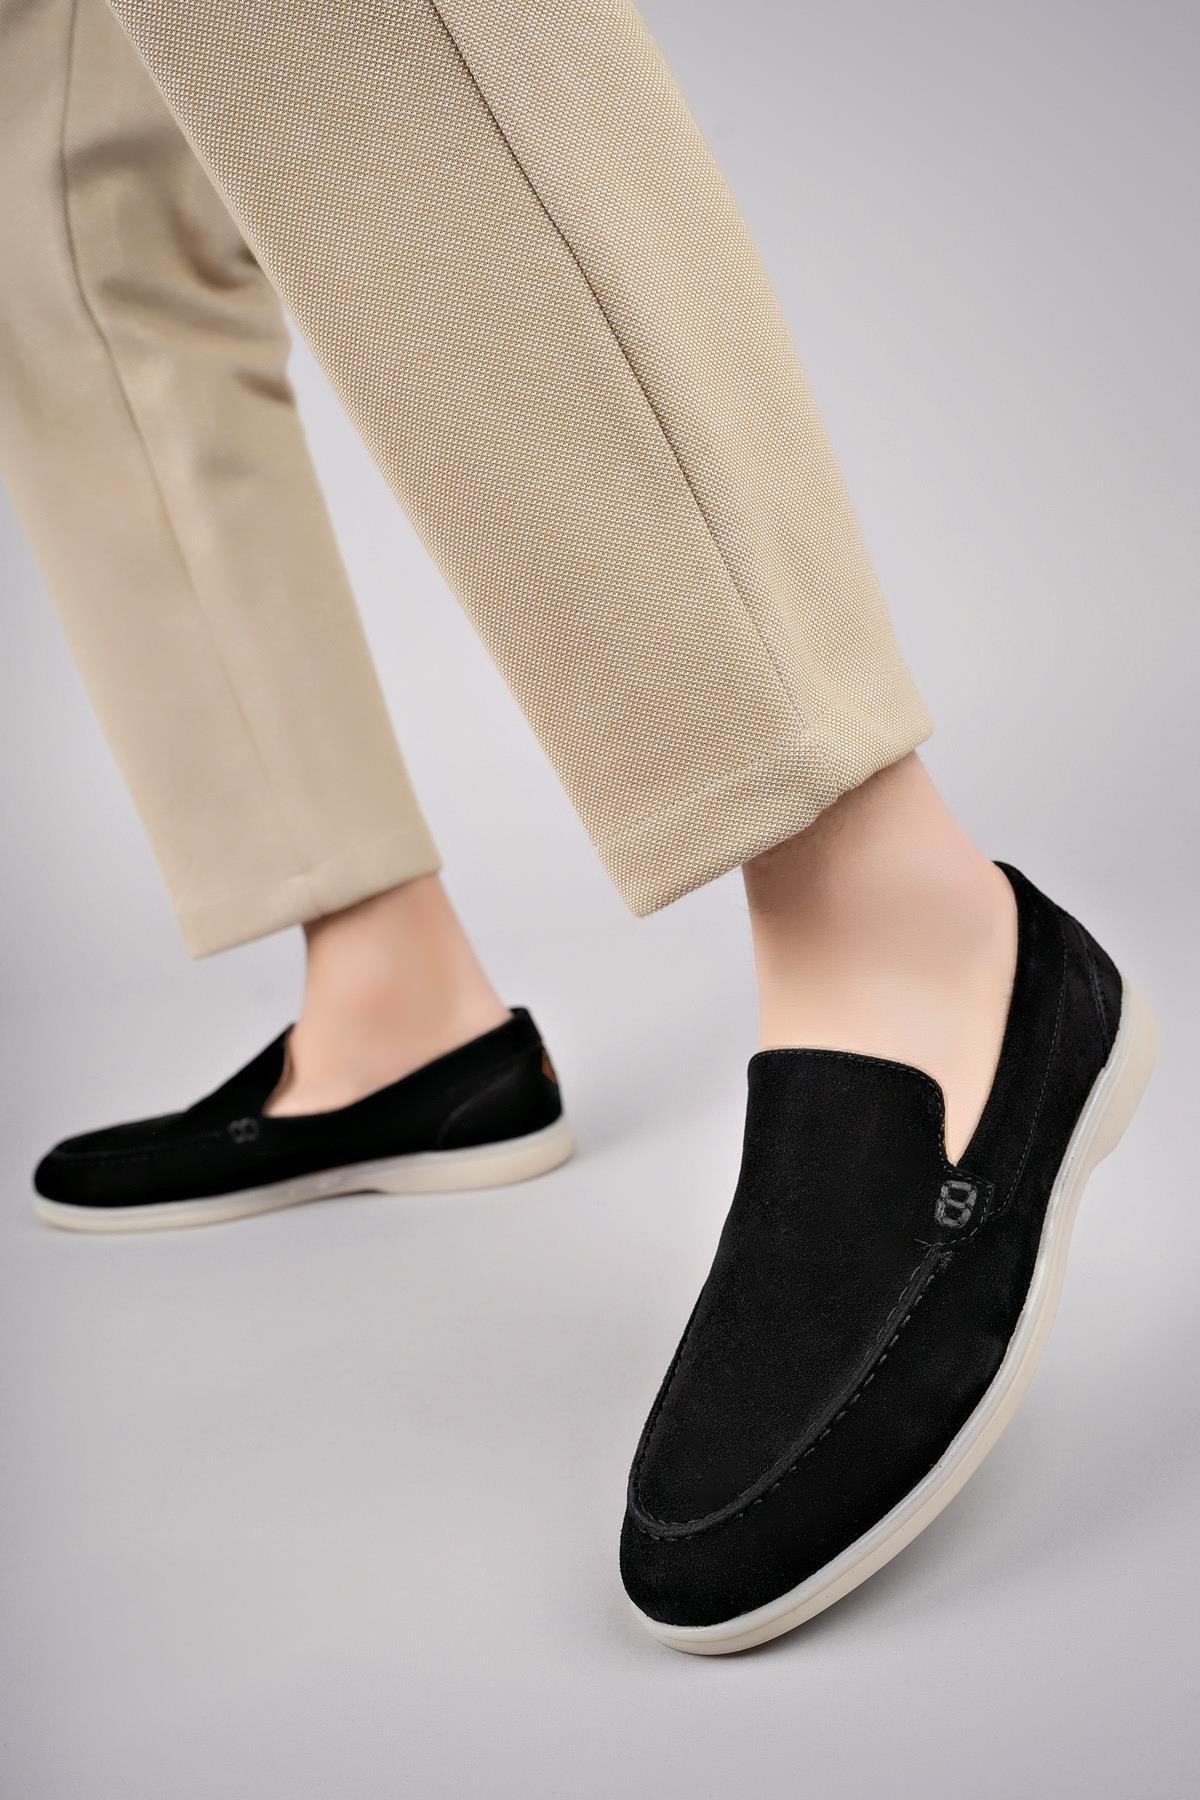 Muggo EDWARD Garantili Erkek Günlük Klasik Hakiki Deri Casual Rahat Ortopedik Bağcıksız Ayakkabı